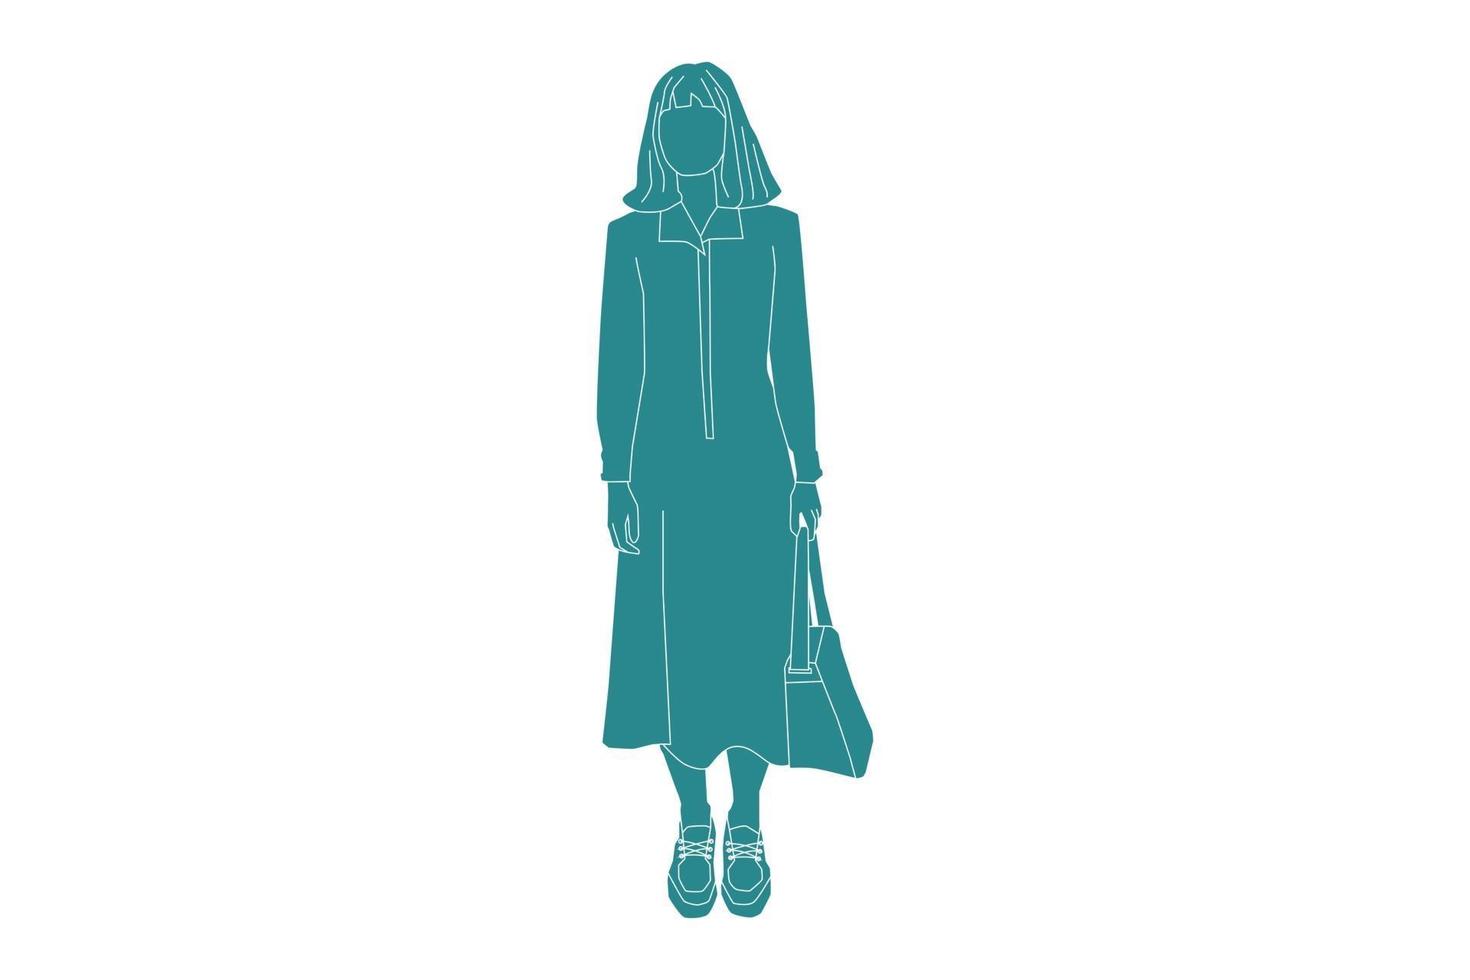 ilustração em vetor de mulher casual em pé, estilo simples com contorno